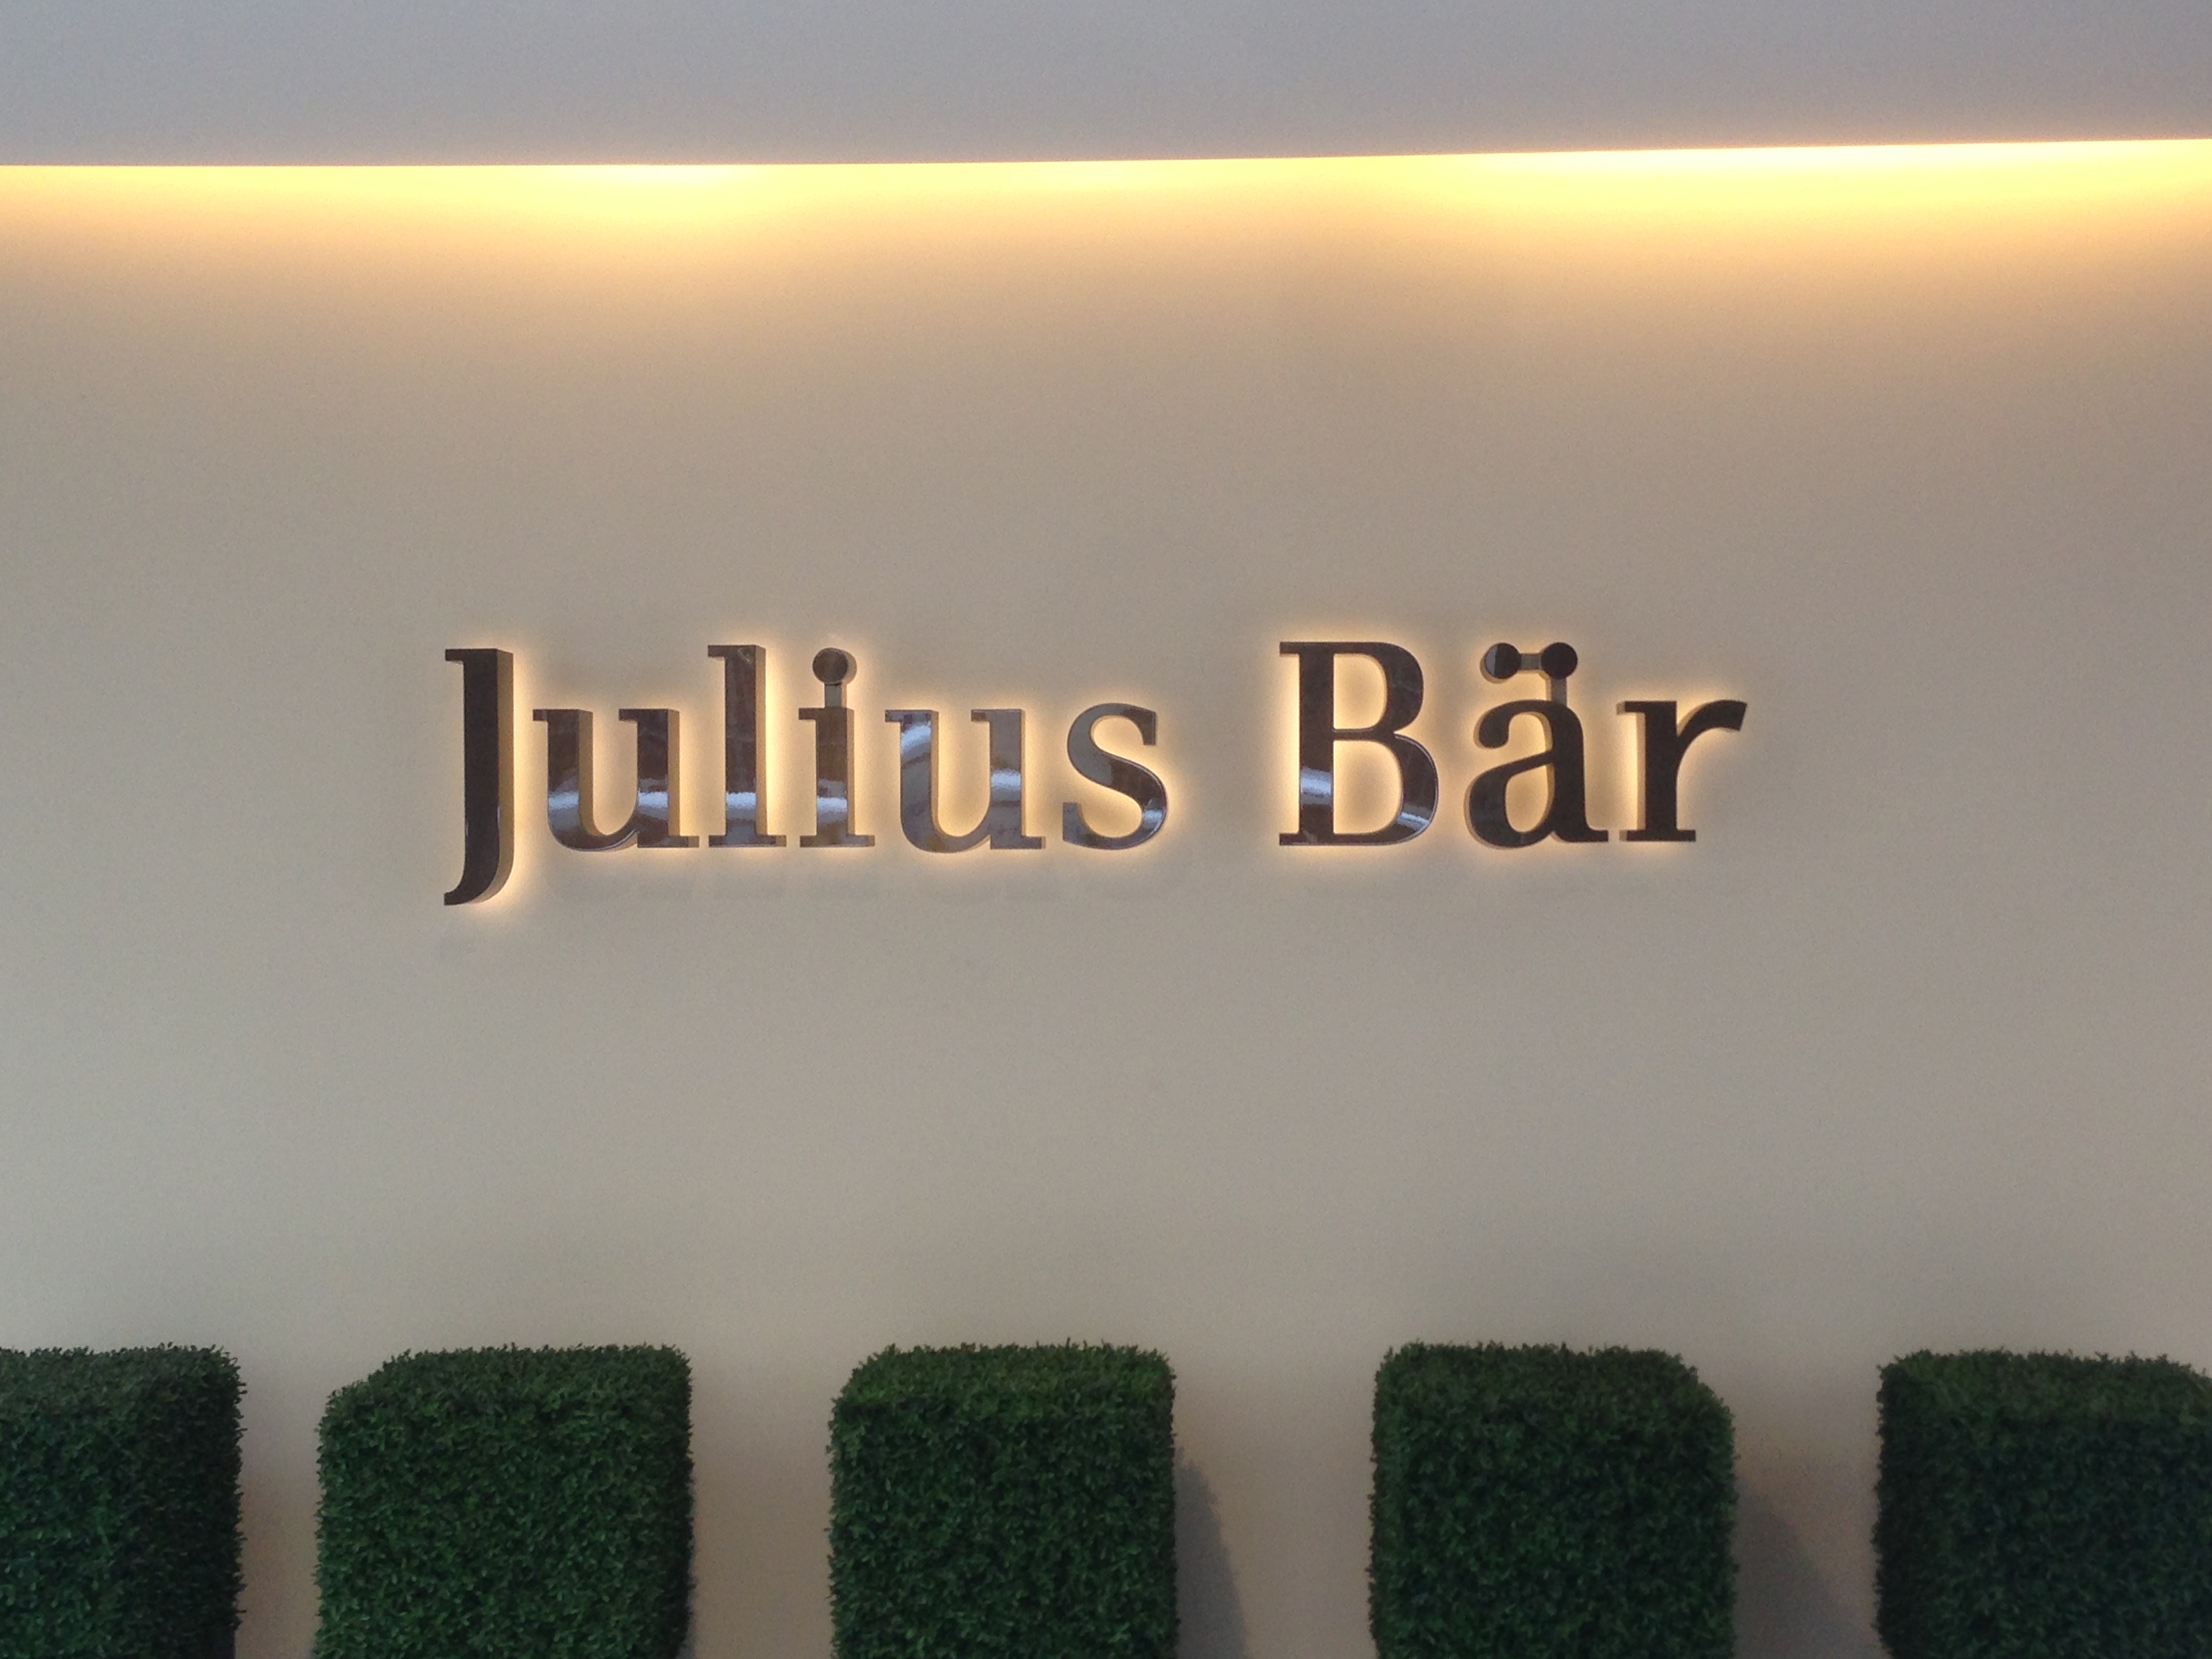 Julius Bar Legt Bei Verwalteten Vermogen Zu News Aktuell Investrends Ch